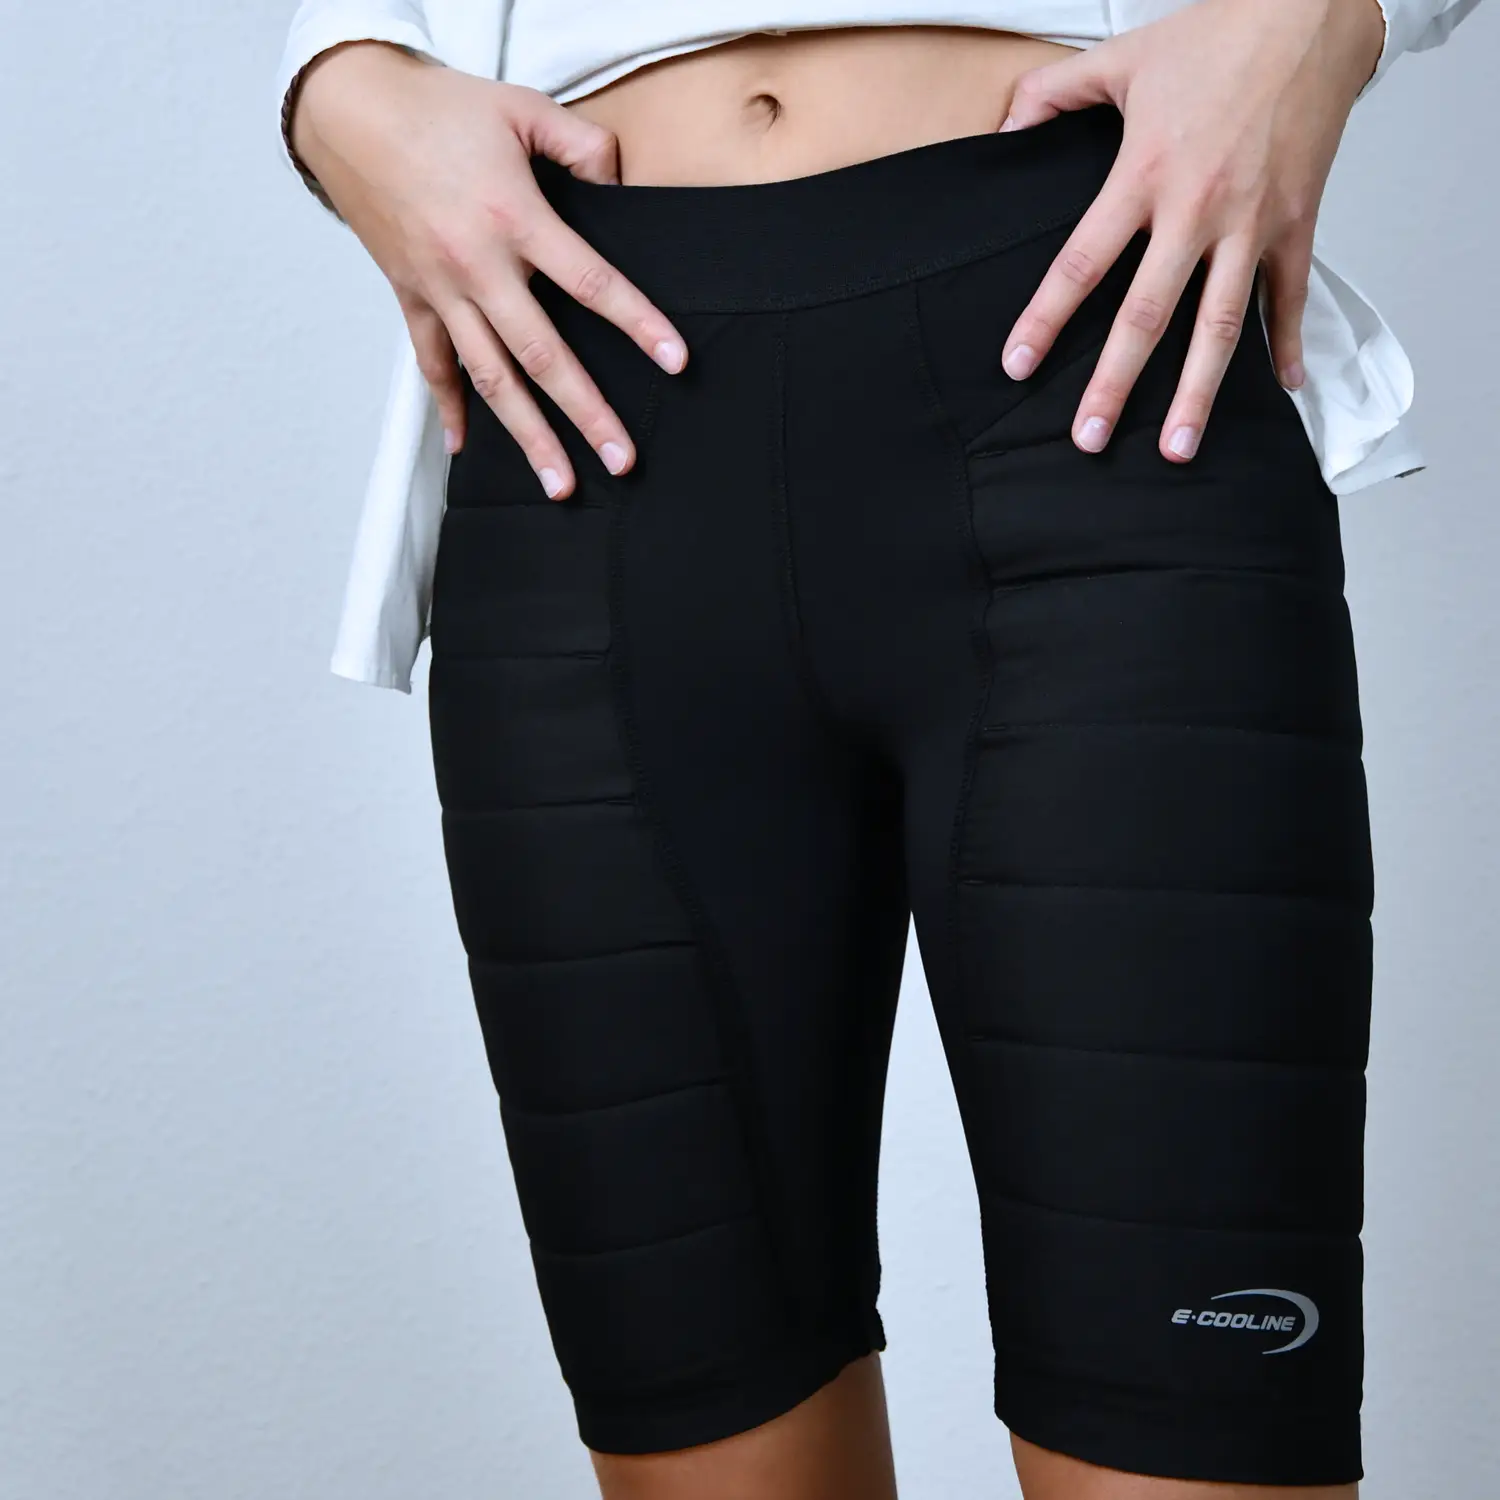 Powercool SX3 Pants schwarz an Frauenbeinen